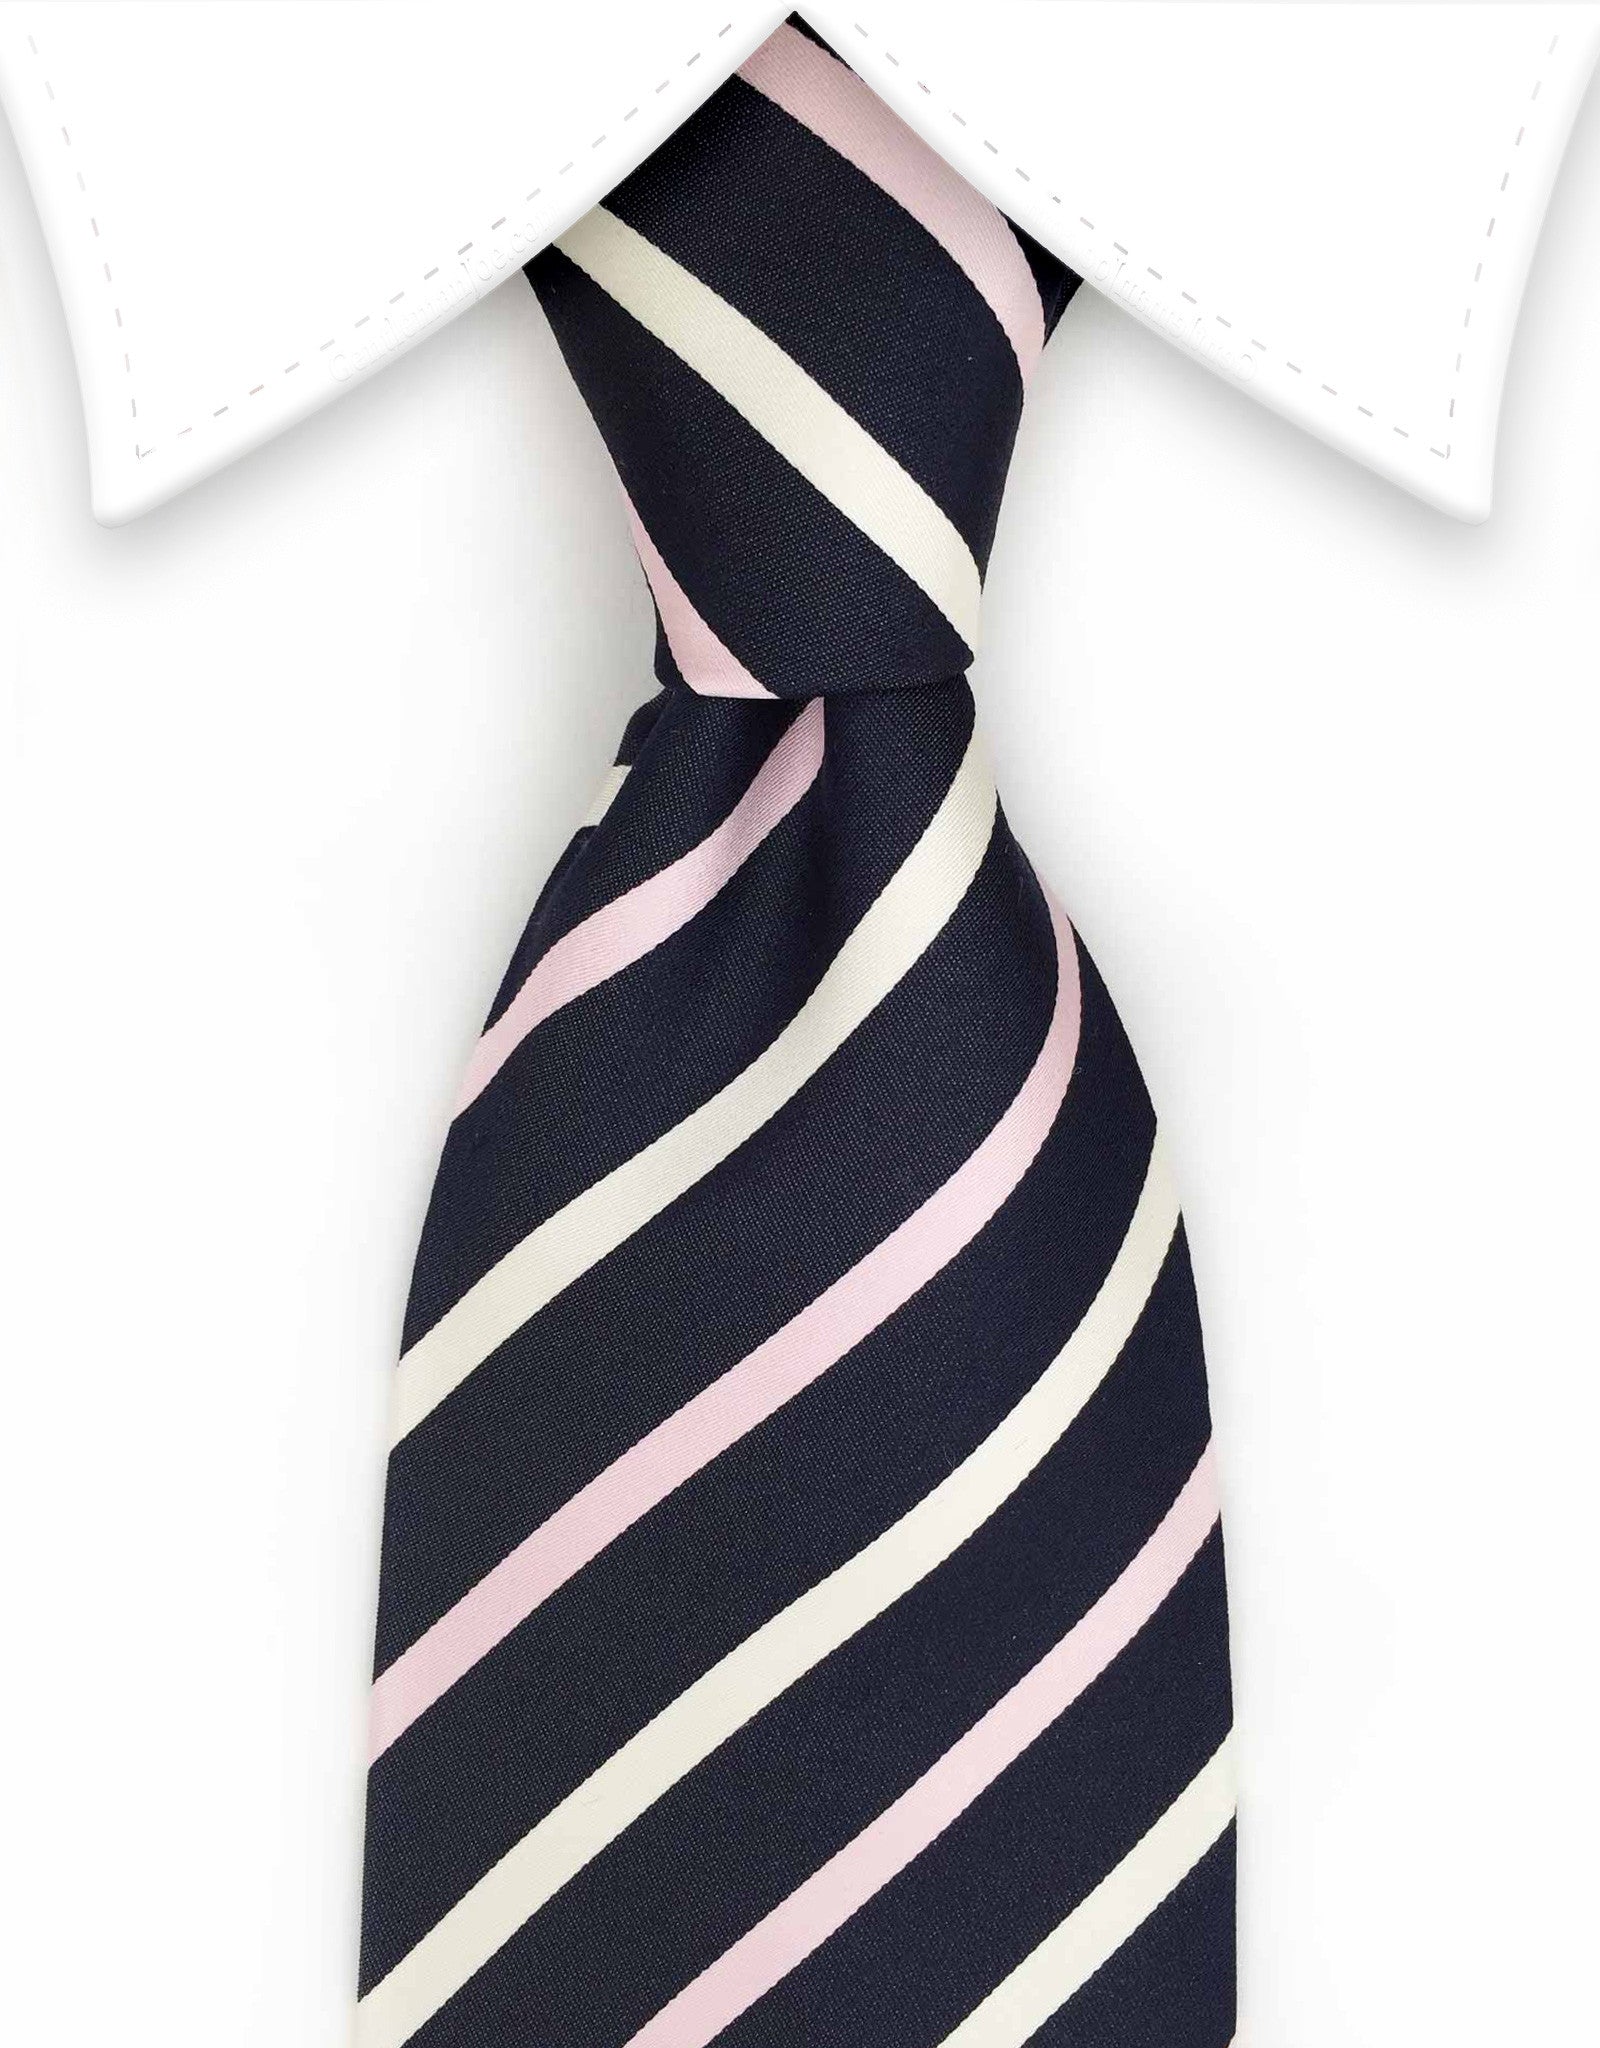 Navy, pink, white striped tie